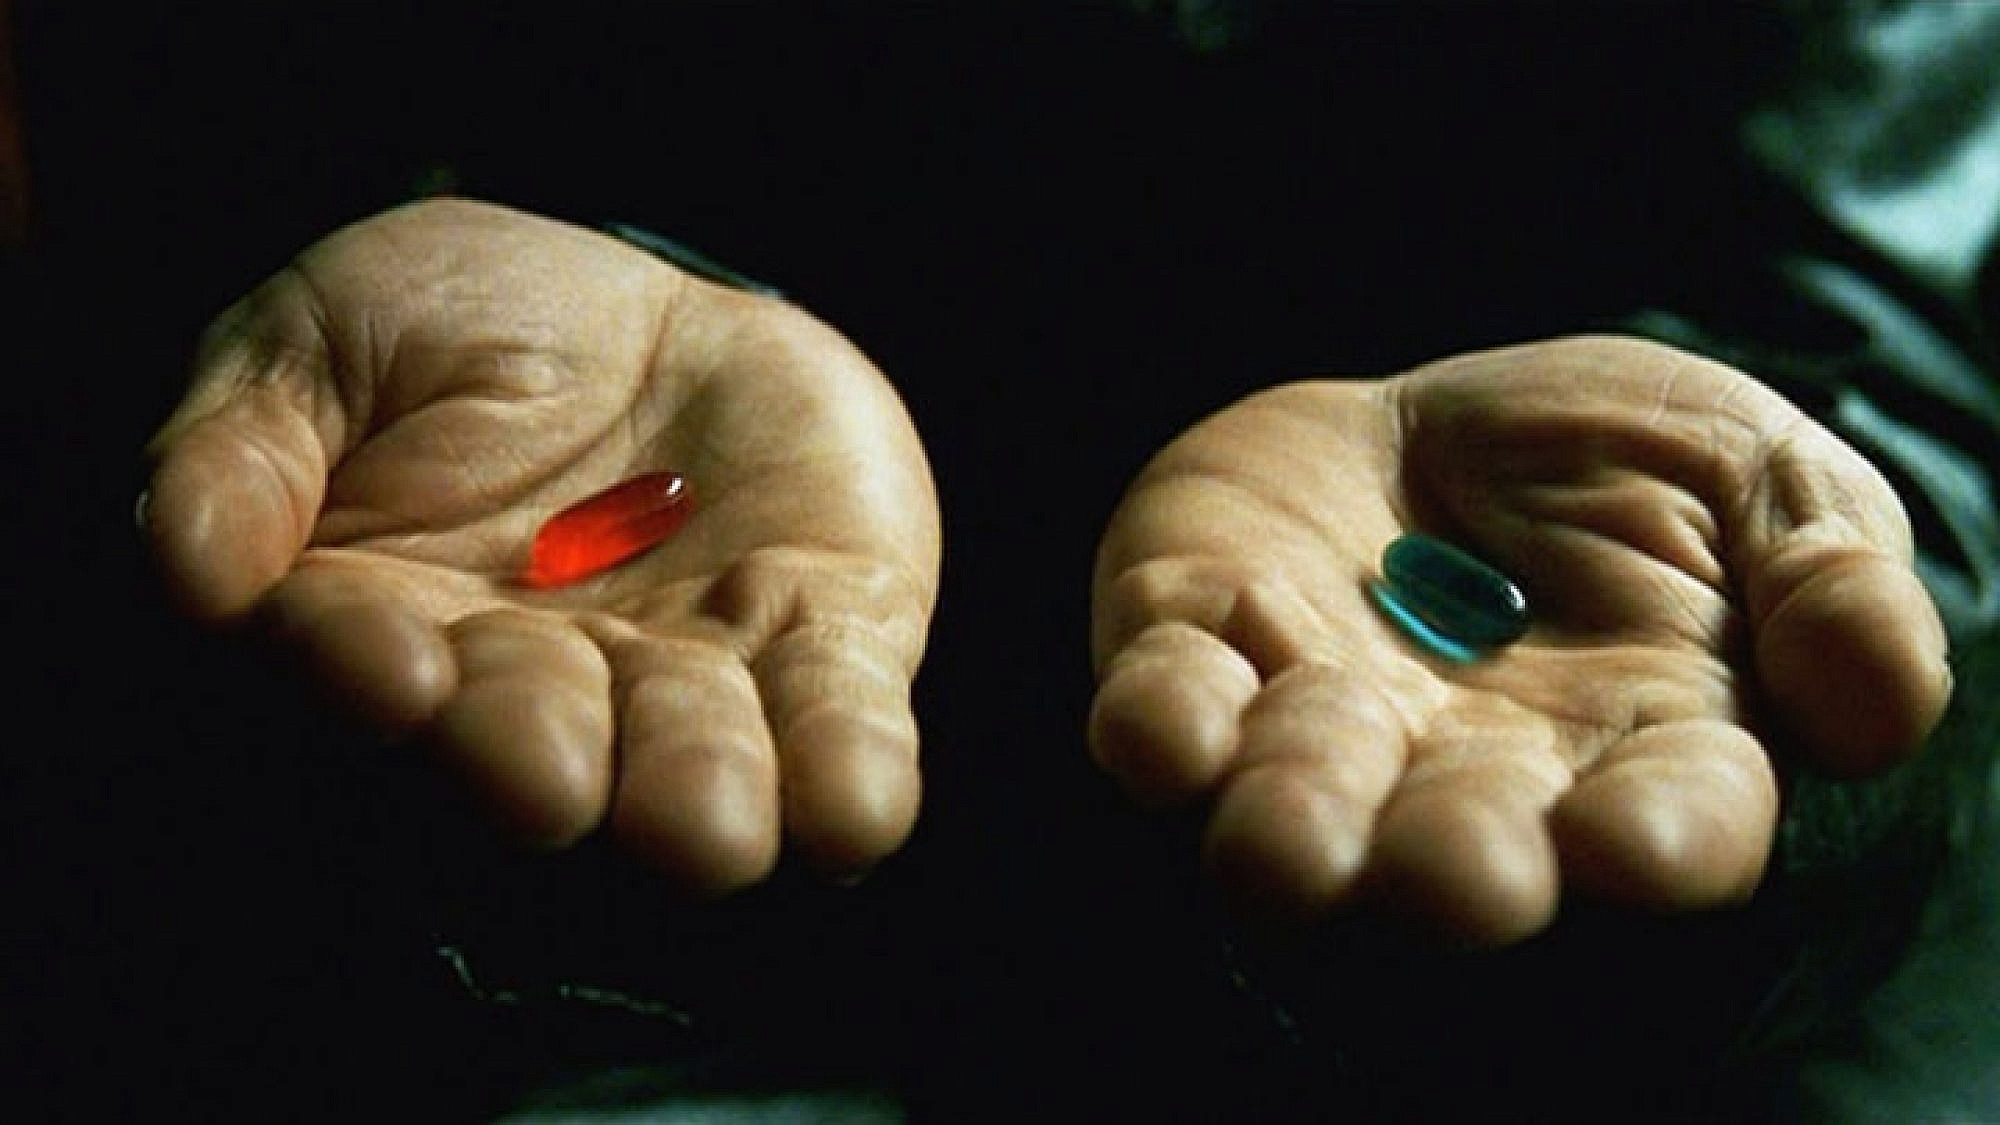 הגלולה הכחולה או האדומה? | צילום מתוך הסרט "מטריקס"